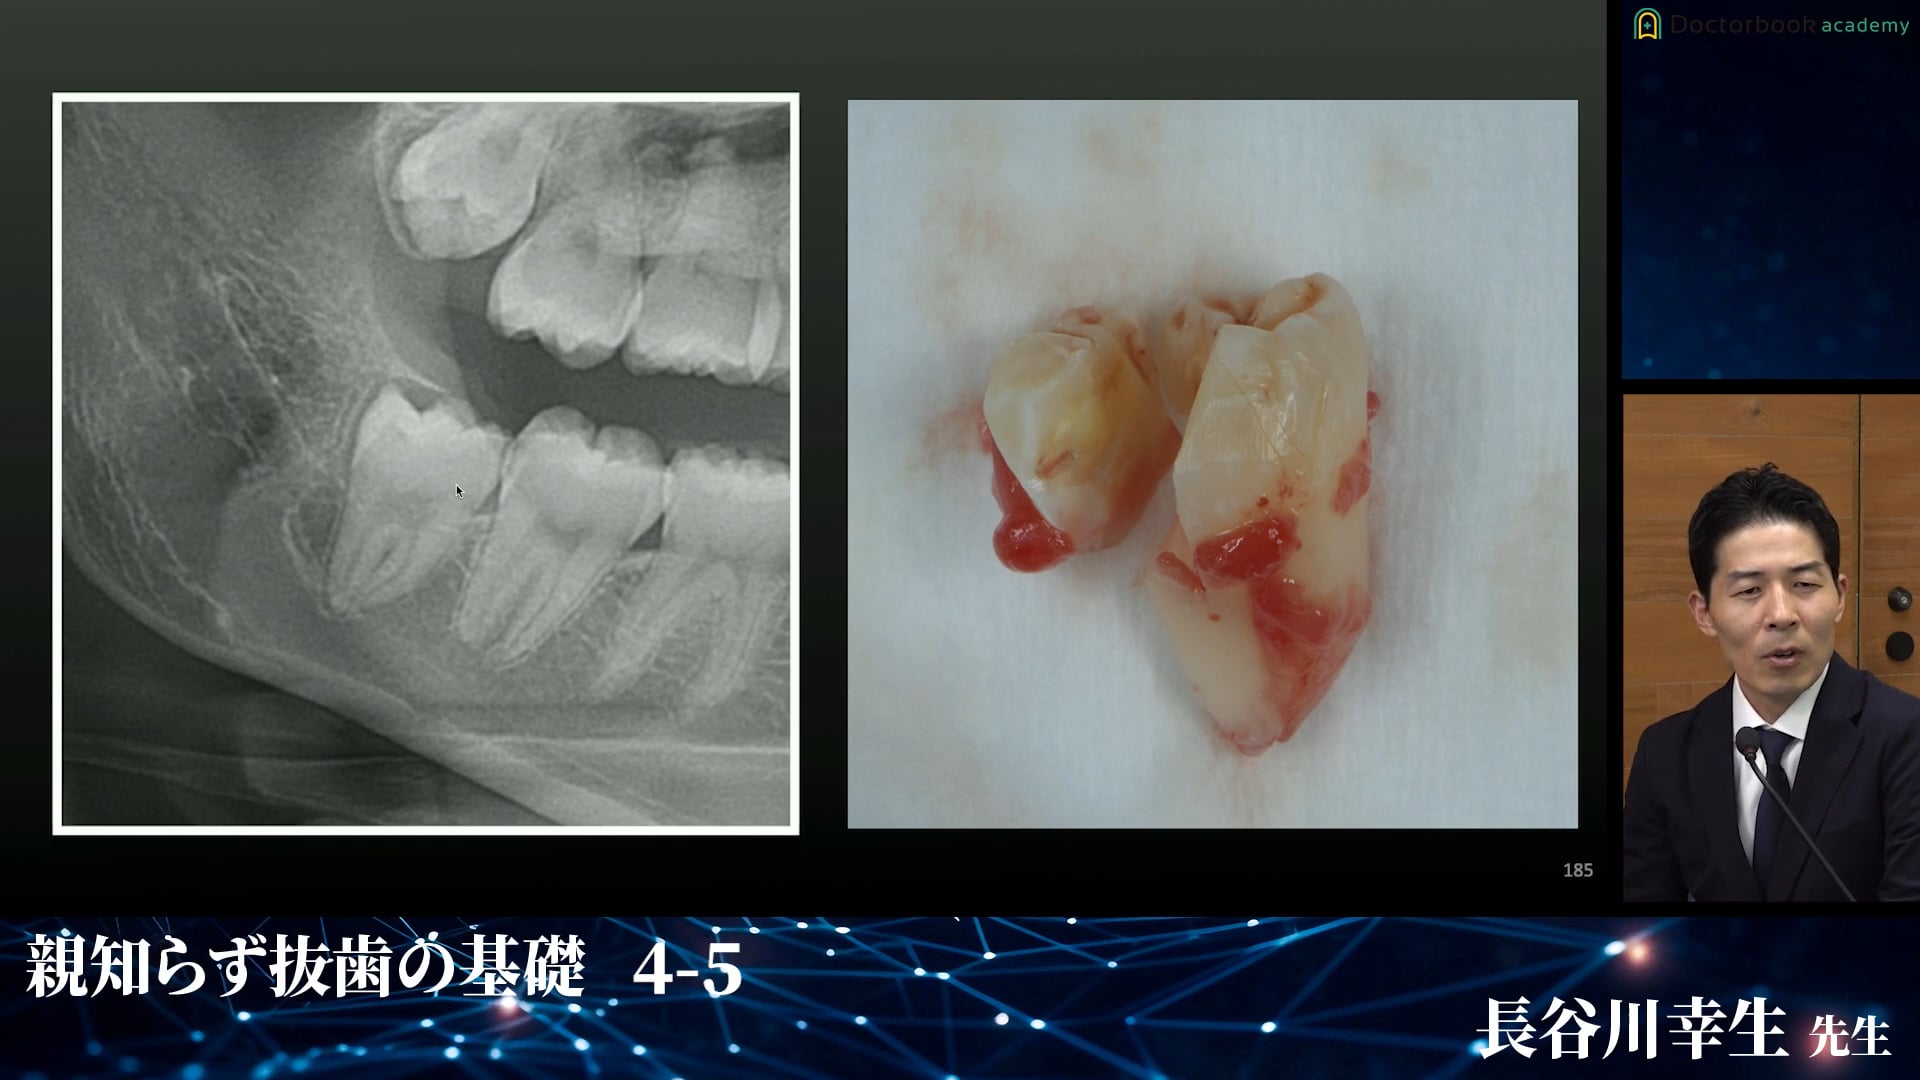 下顎垂直埋伏智歯の症例│親知らず抜歯の基礎 4-5